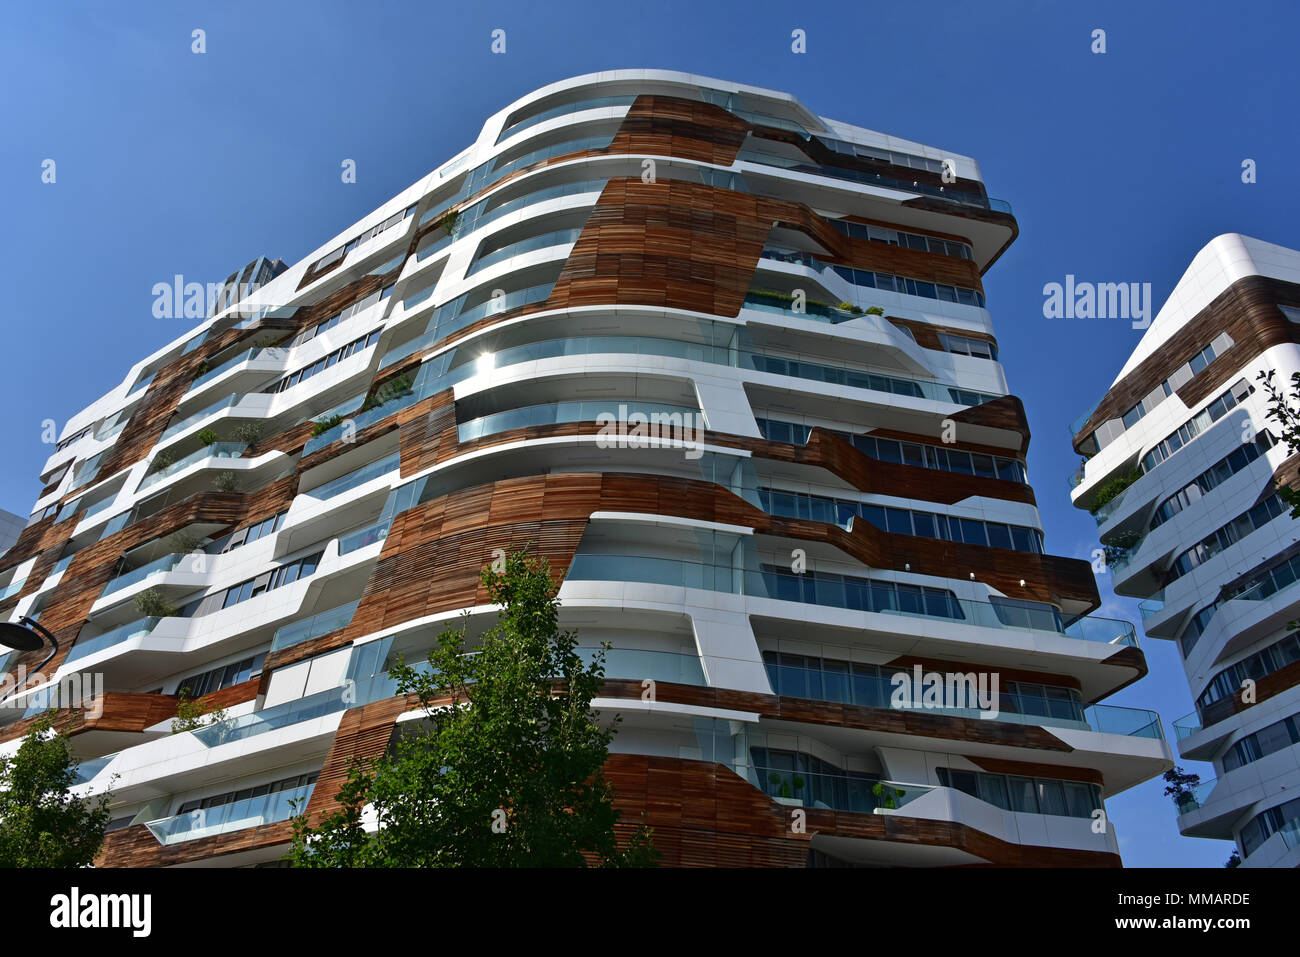 Citylife milano immagini e fotografie stock ad alta risoluzione - Alamy